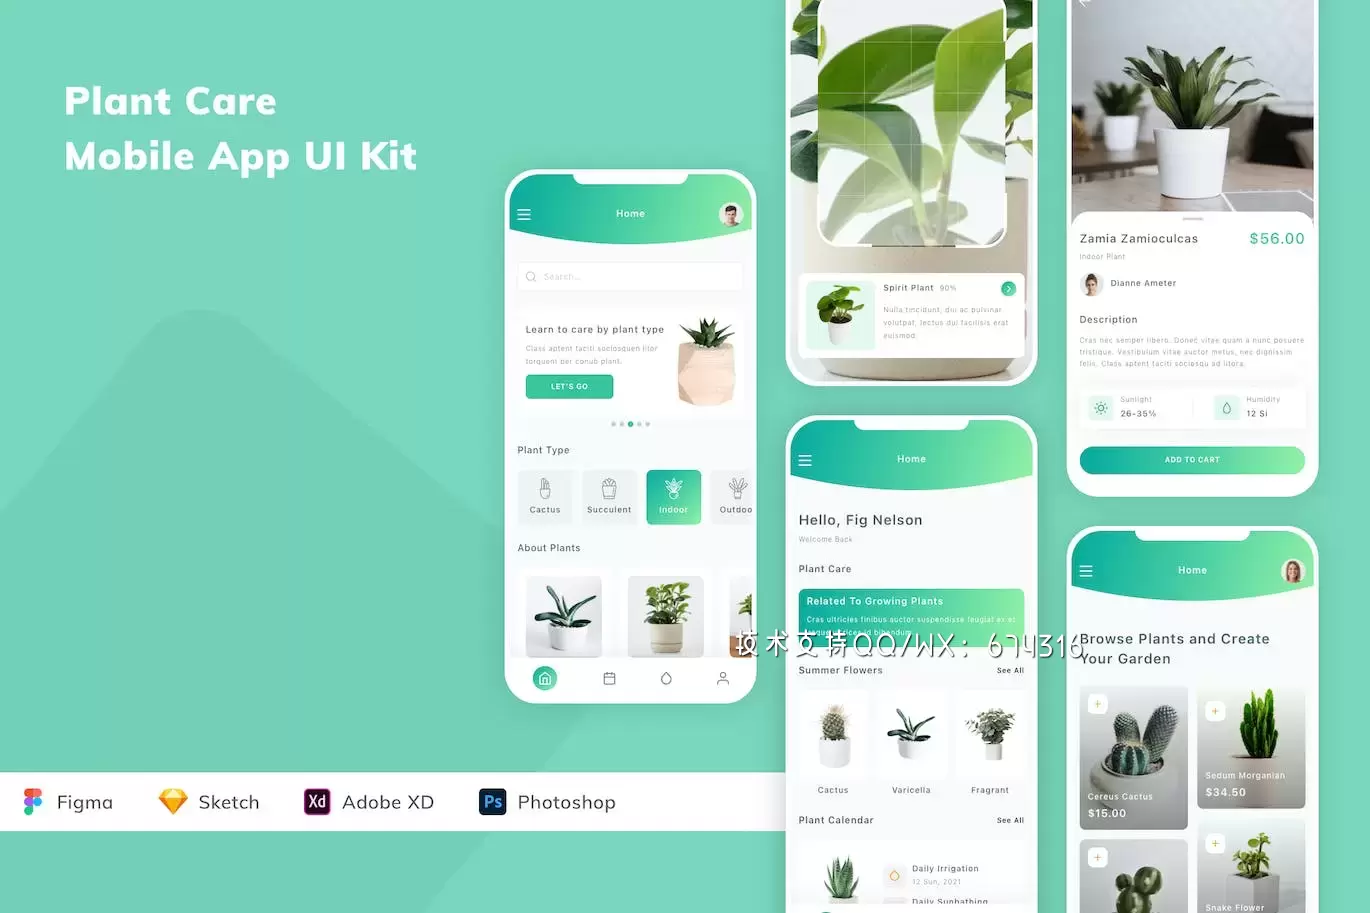 植物绿植管理 App UI Kit (FIG,SKETCH,XD,PSD)免费下载